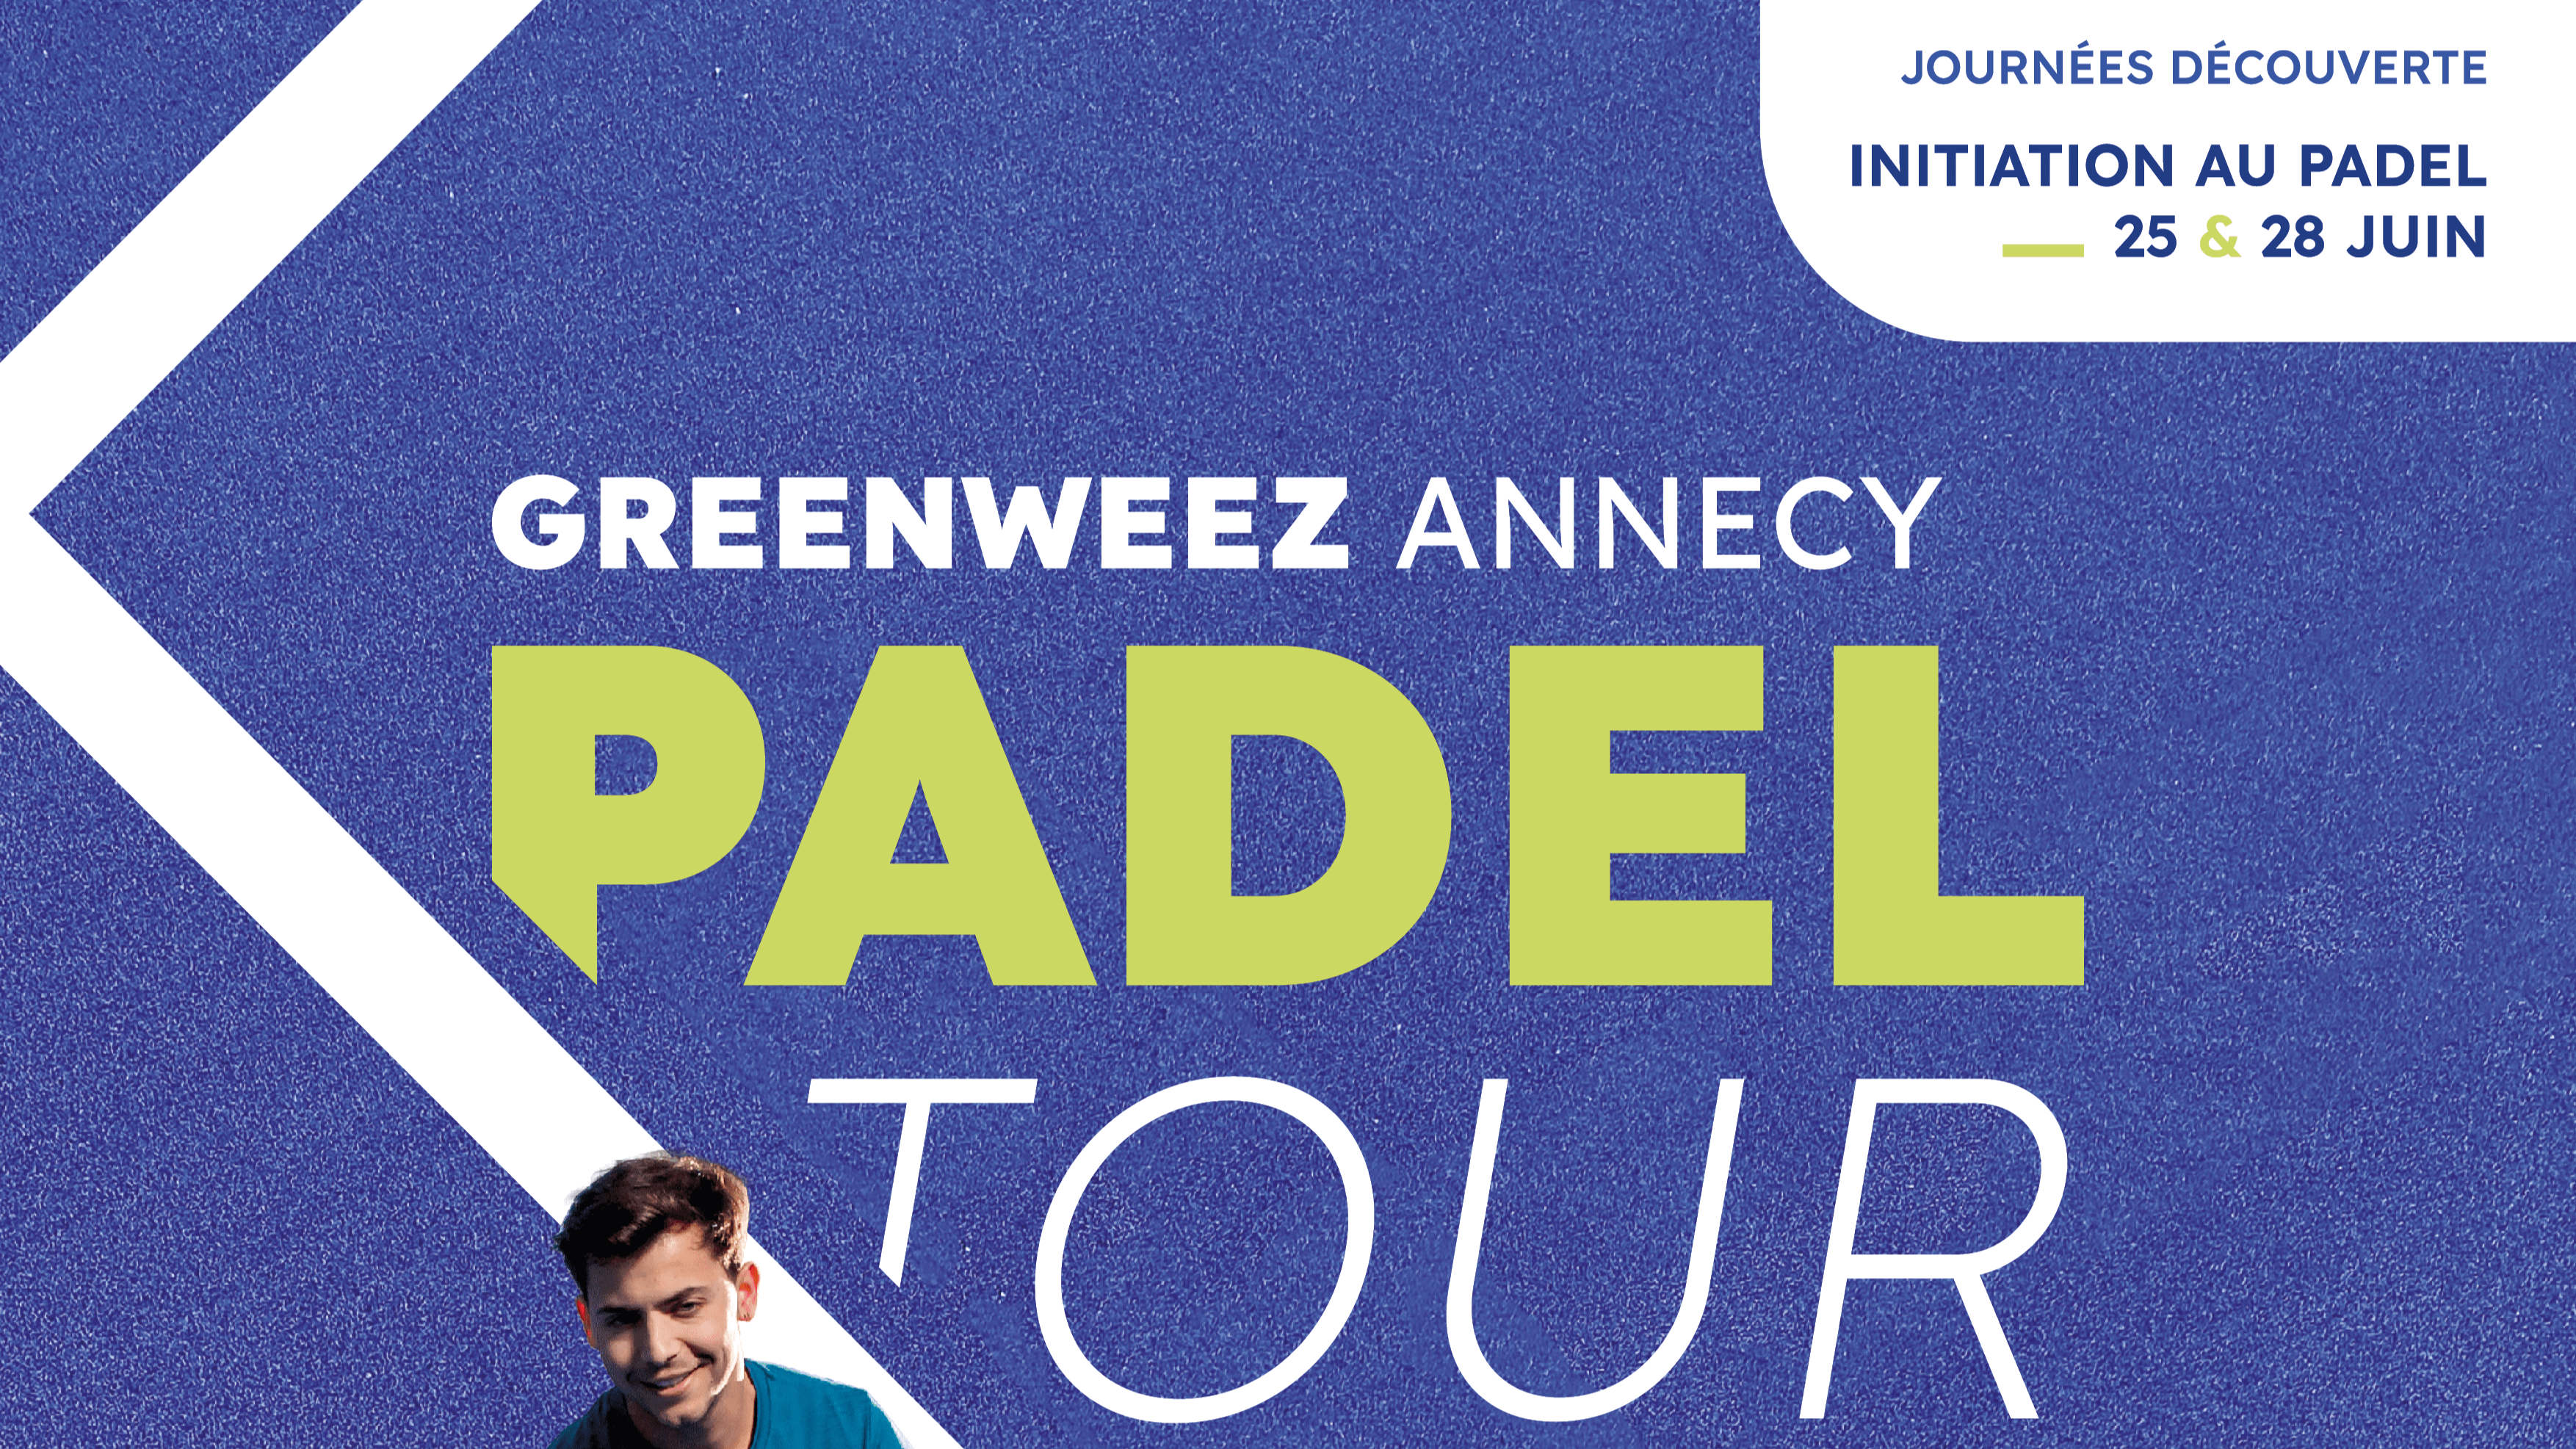 Greenweez Annecy Padel Tour valmistautuu animoimaan Haute-Savoie